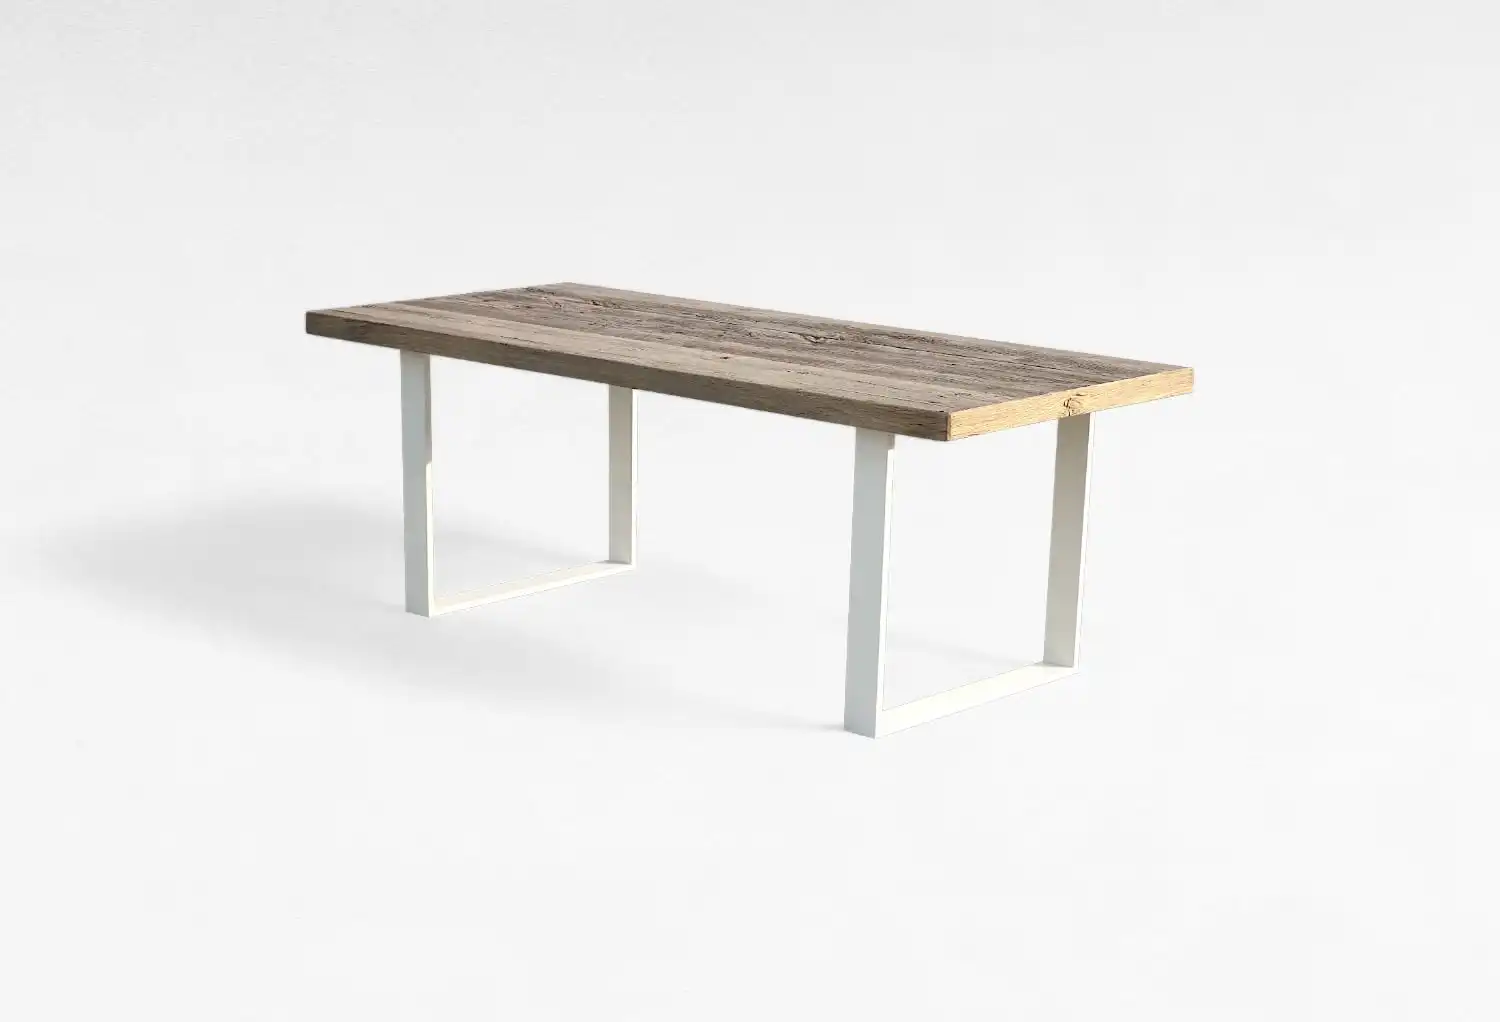 Un simple banc en bois avec une assise en bois clair et des pieds en métal blanc sur un fond blanc uni, rappelant une table rustique.